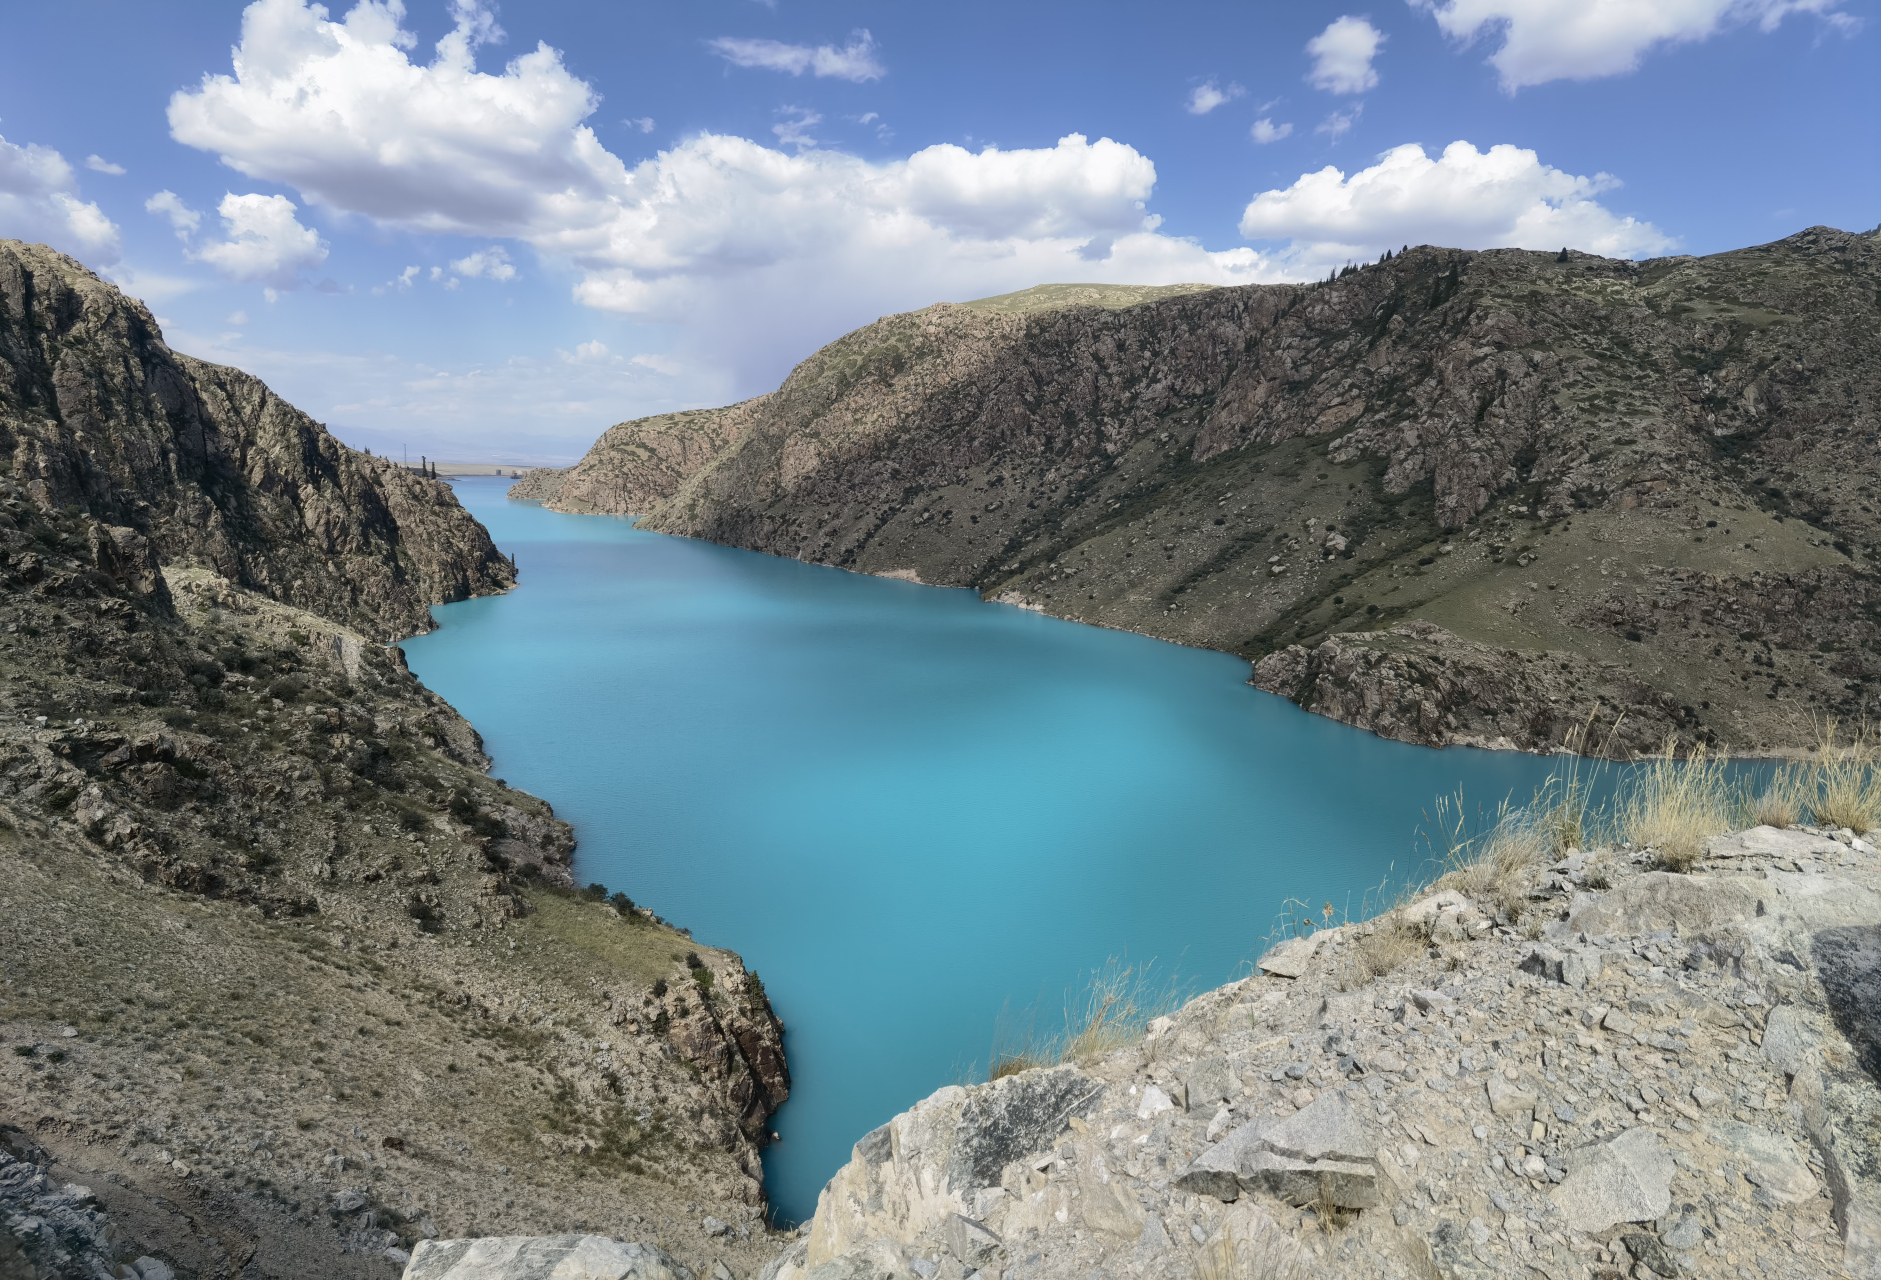 新疆昭苏玉湖,像一颗从天而降的巨大蓝宝石镶嵌在大地上